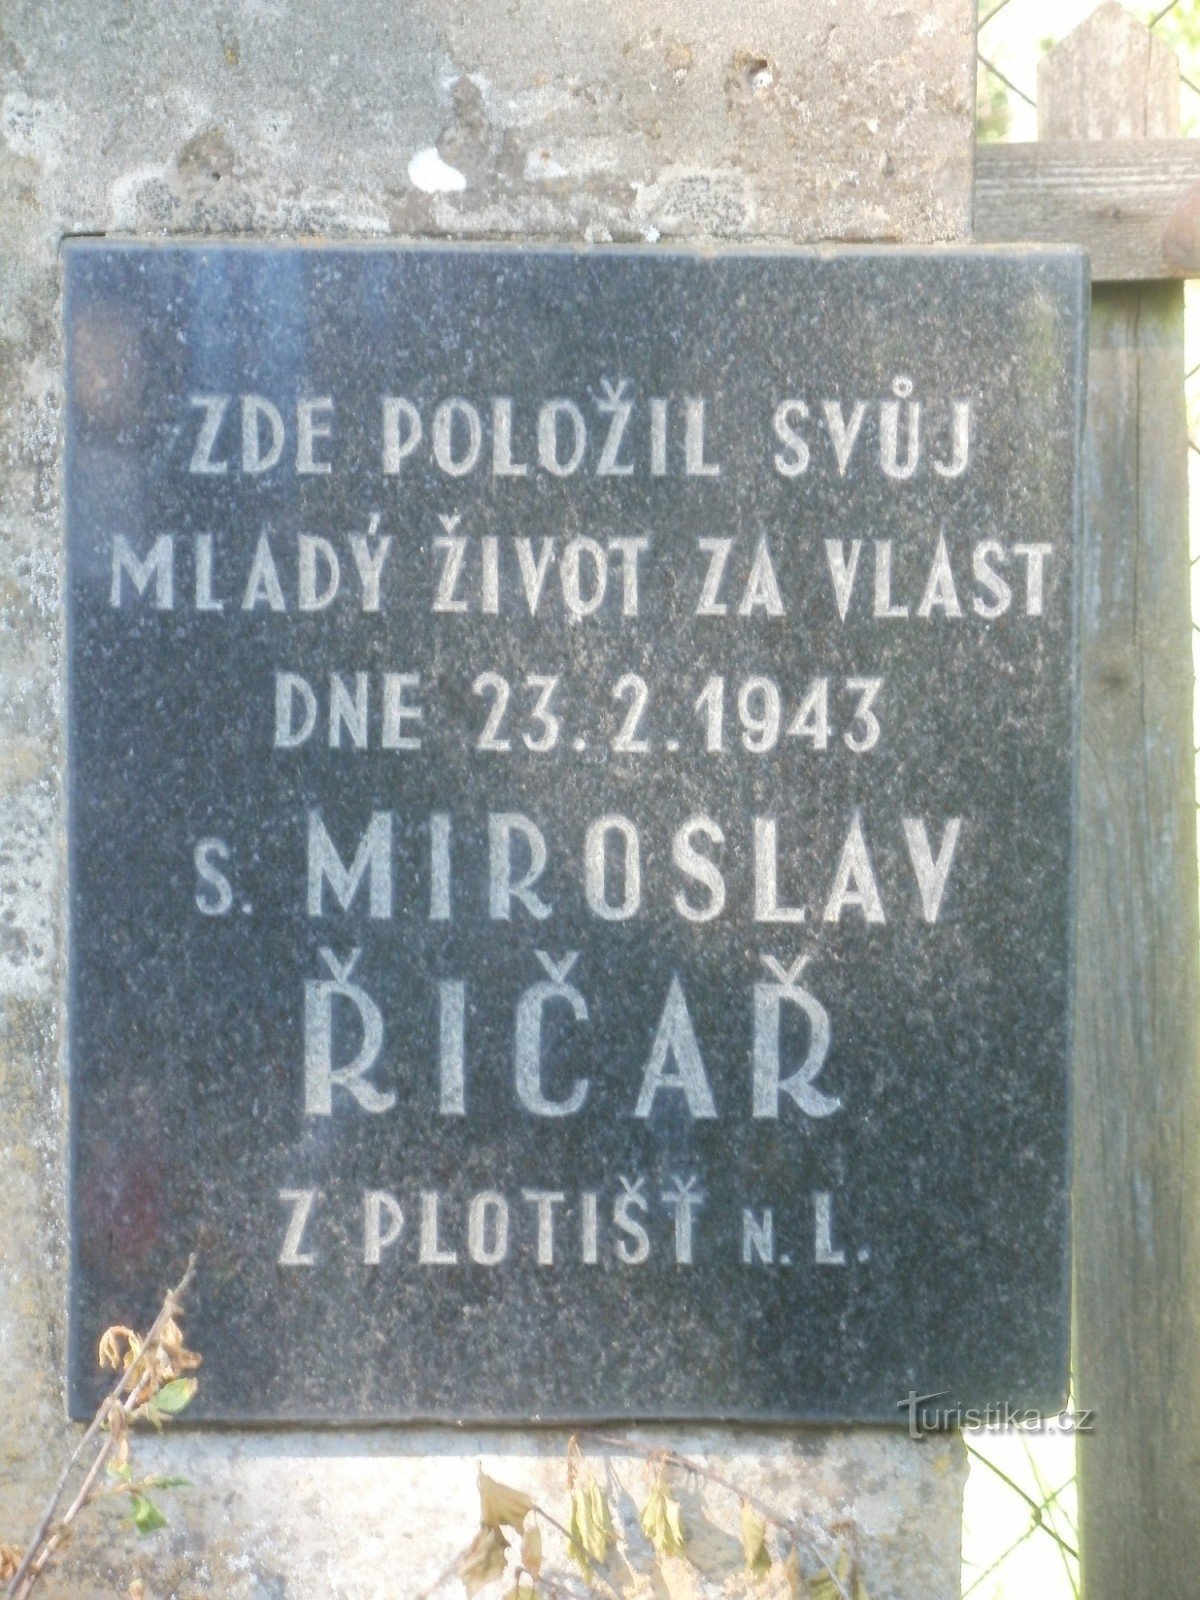 меморіал пану Říčarř біля Тиніште над Орліцею